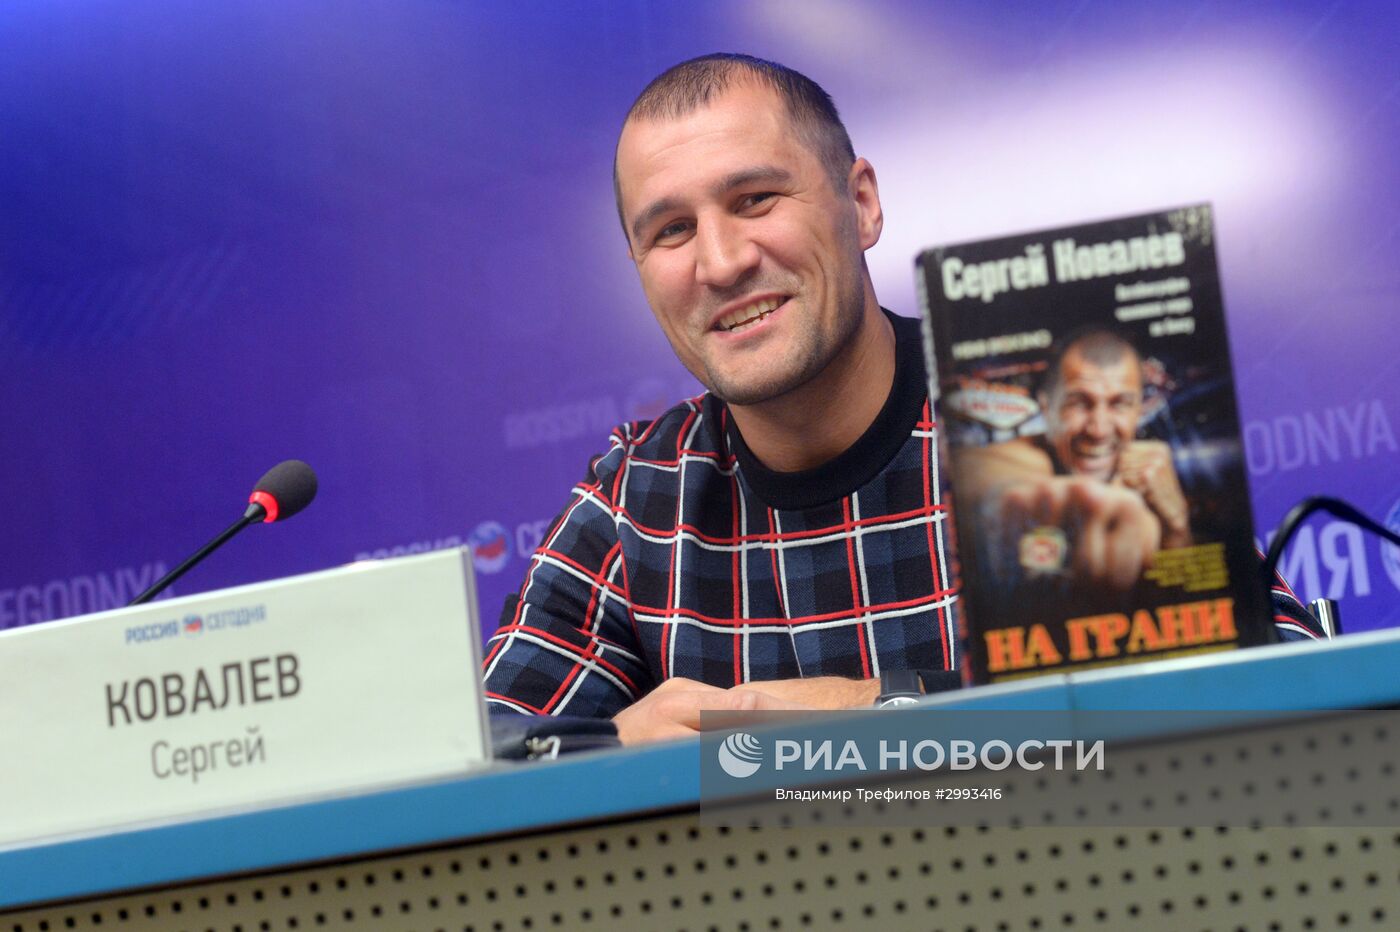 Боксёр С.Ковалев представил свою книгу "На грани"